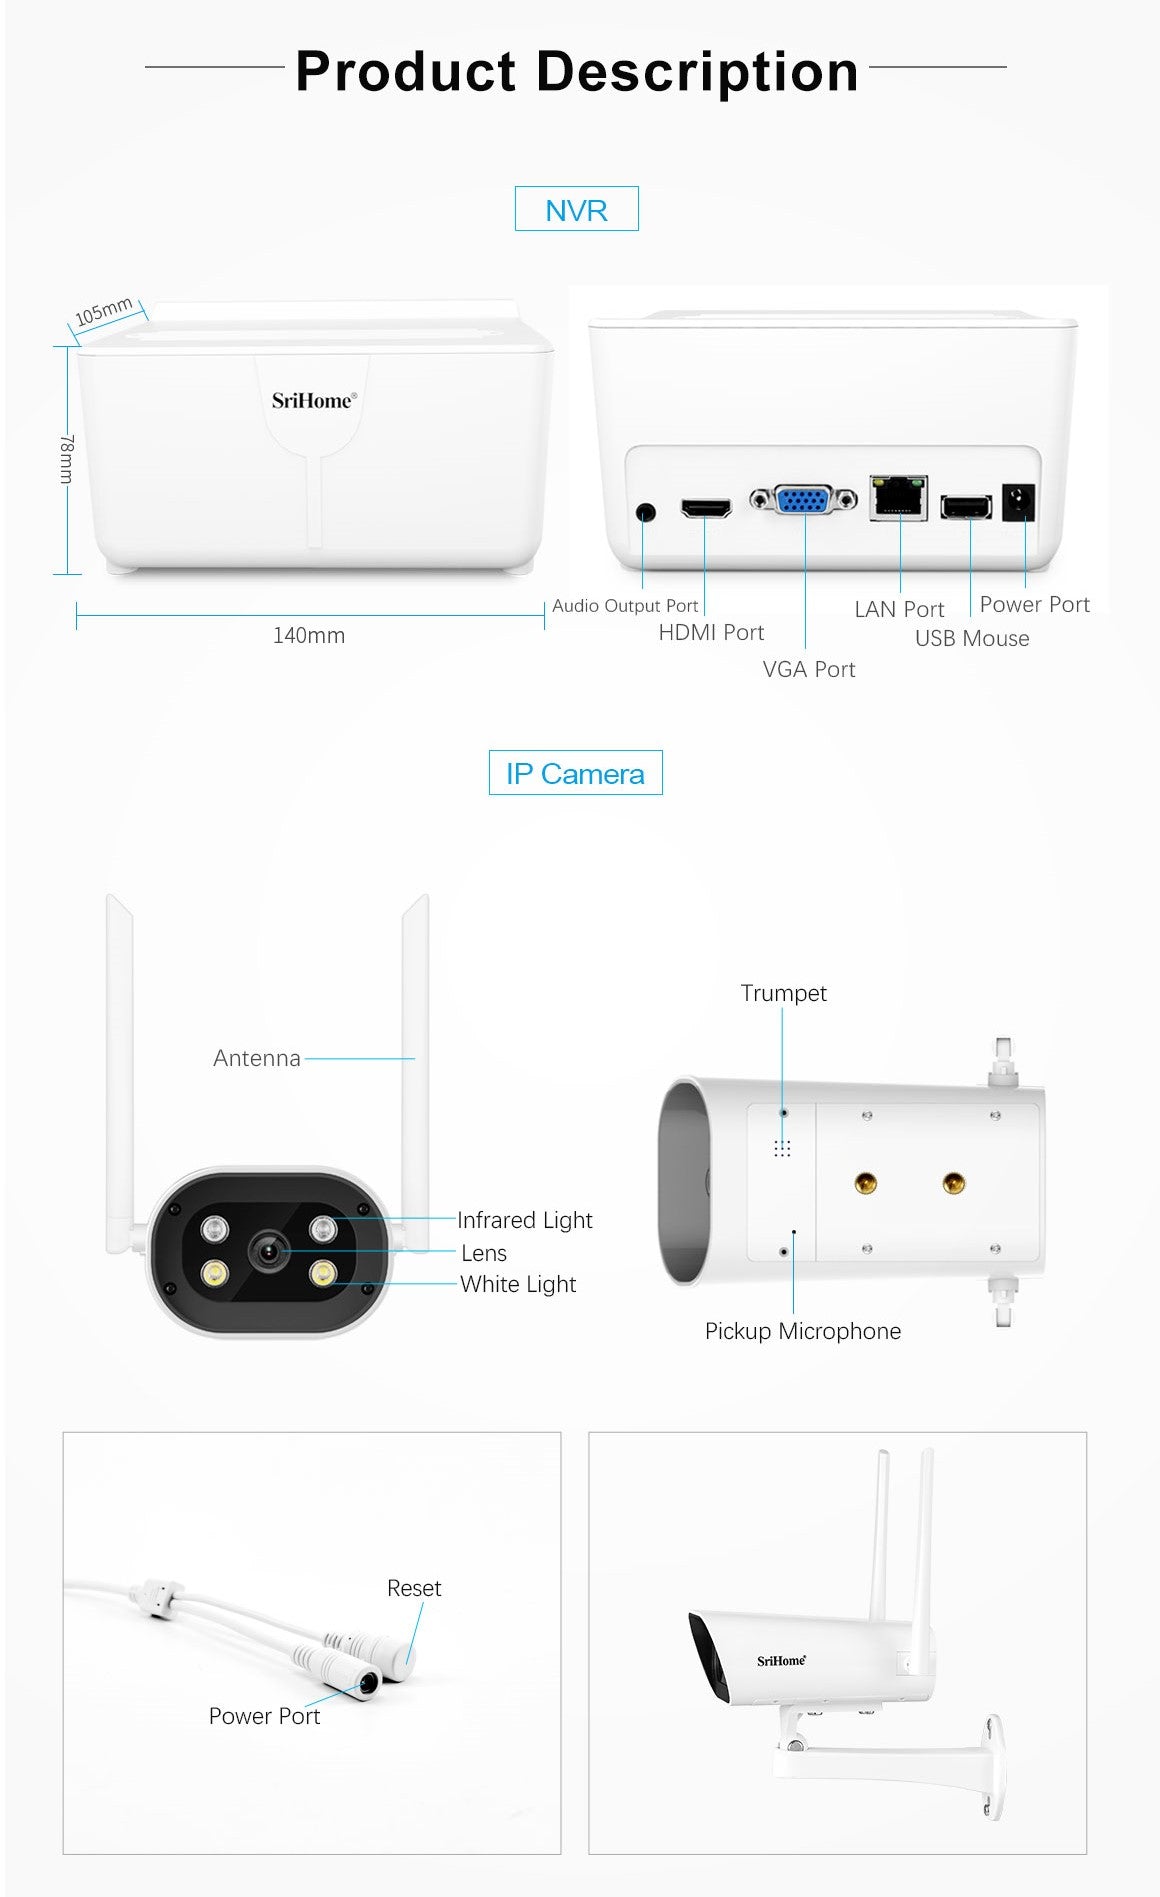 4 CH NVR Kit trådløst sikkerhedssystem + 1080P FHD WiFi IP-kamera CCTV (4 stk)